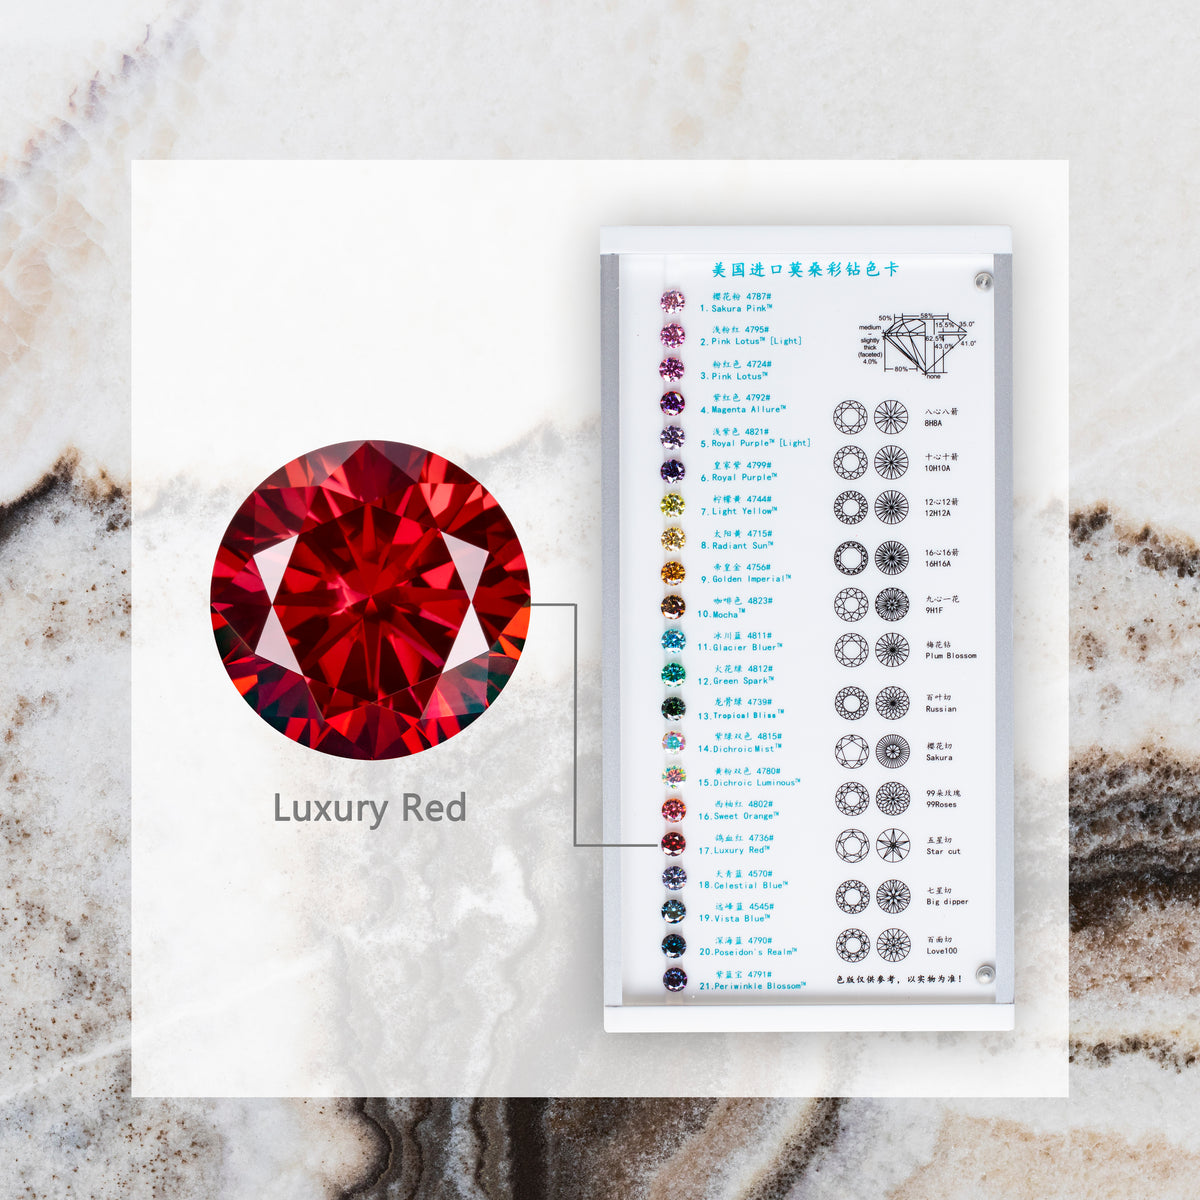 Luxury Red Pear Cut Teardrop Shape Moissanite Diamond Loose Gemstones GRA Certified Vivid Red VVS1 Moissanite Fancy Cut for Jewelry Making